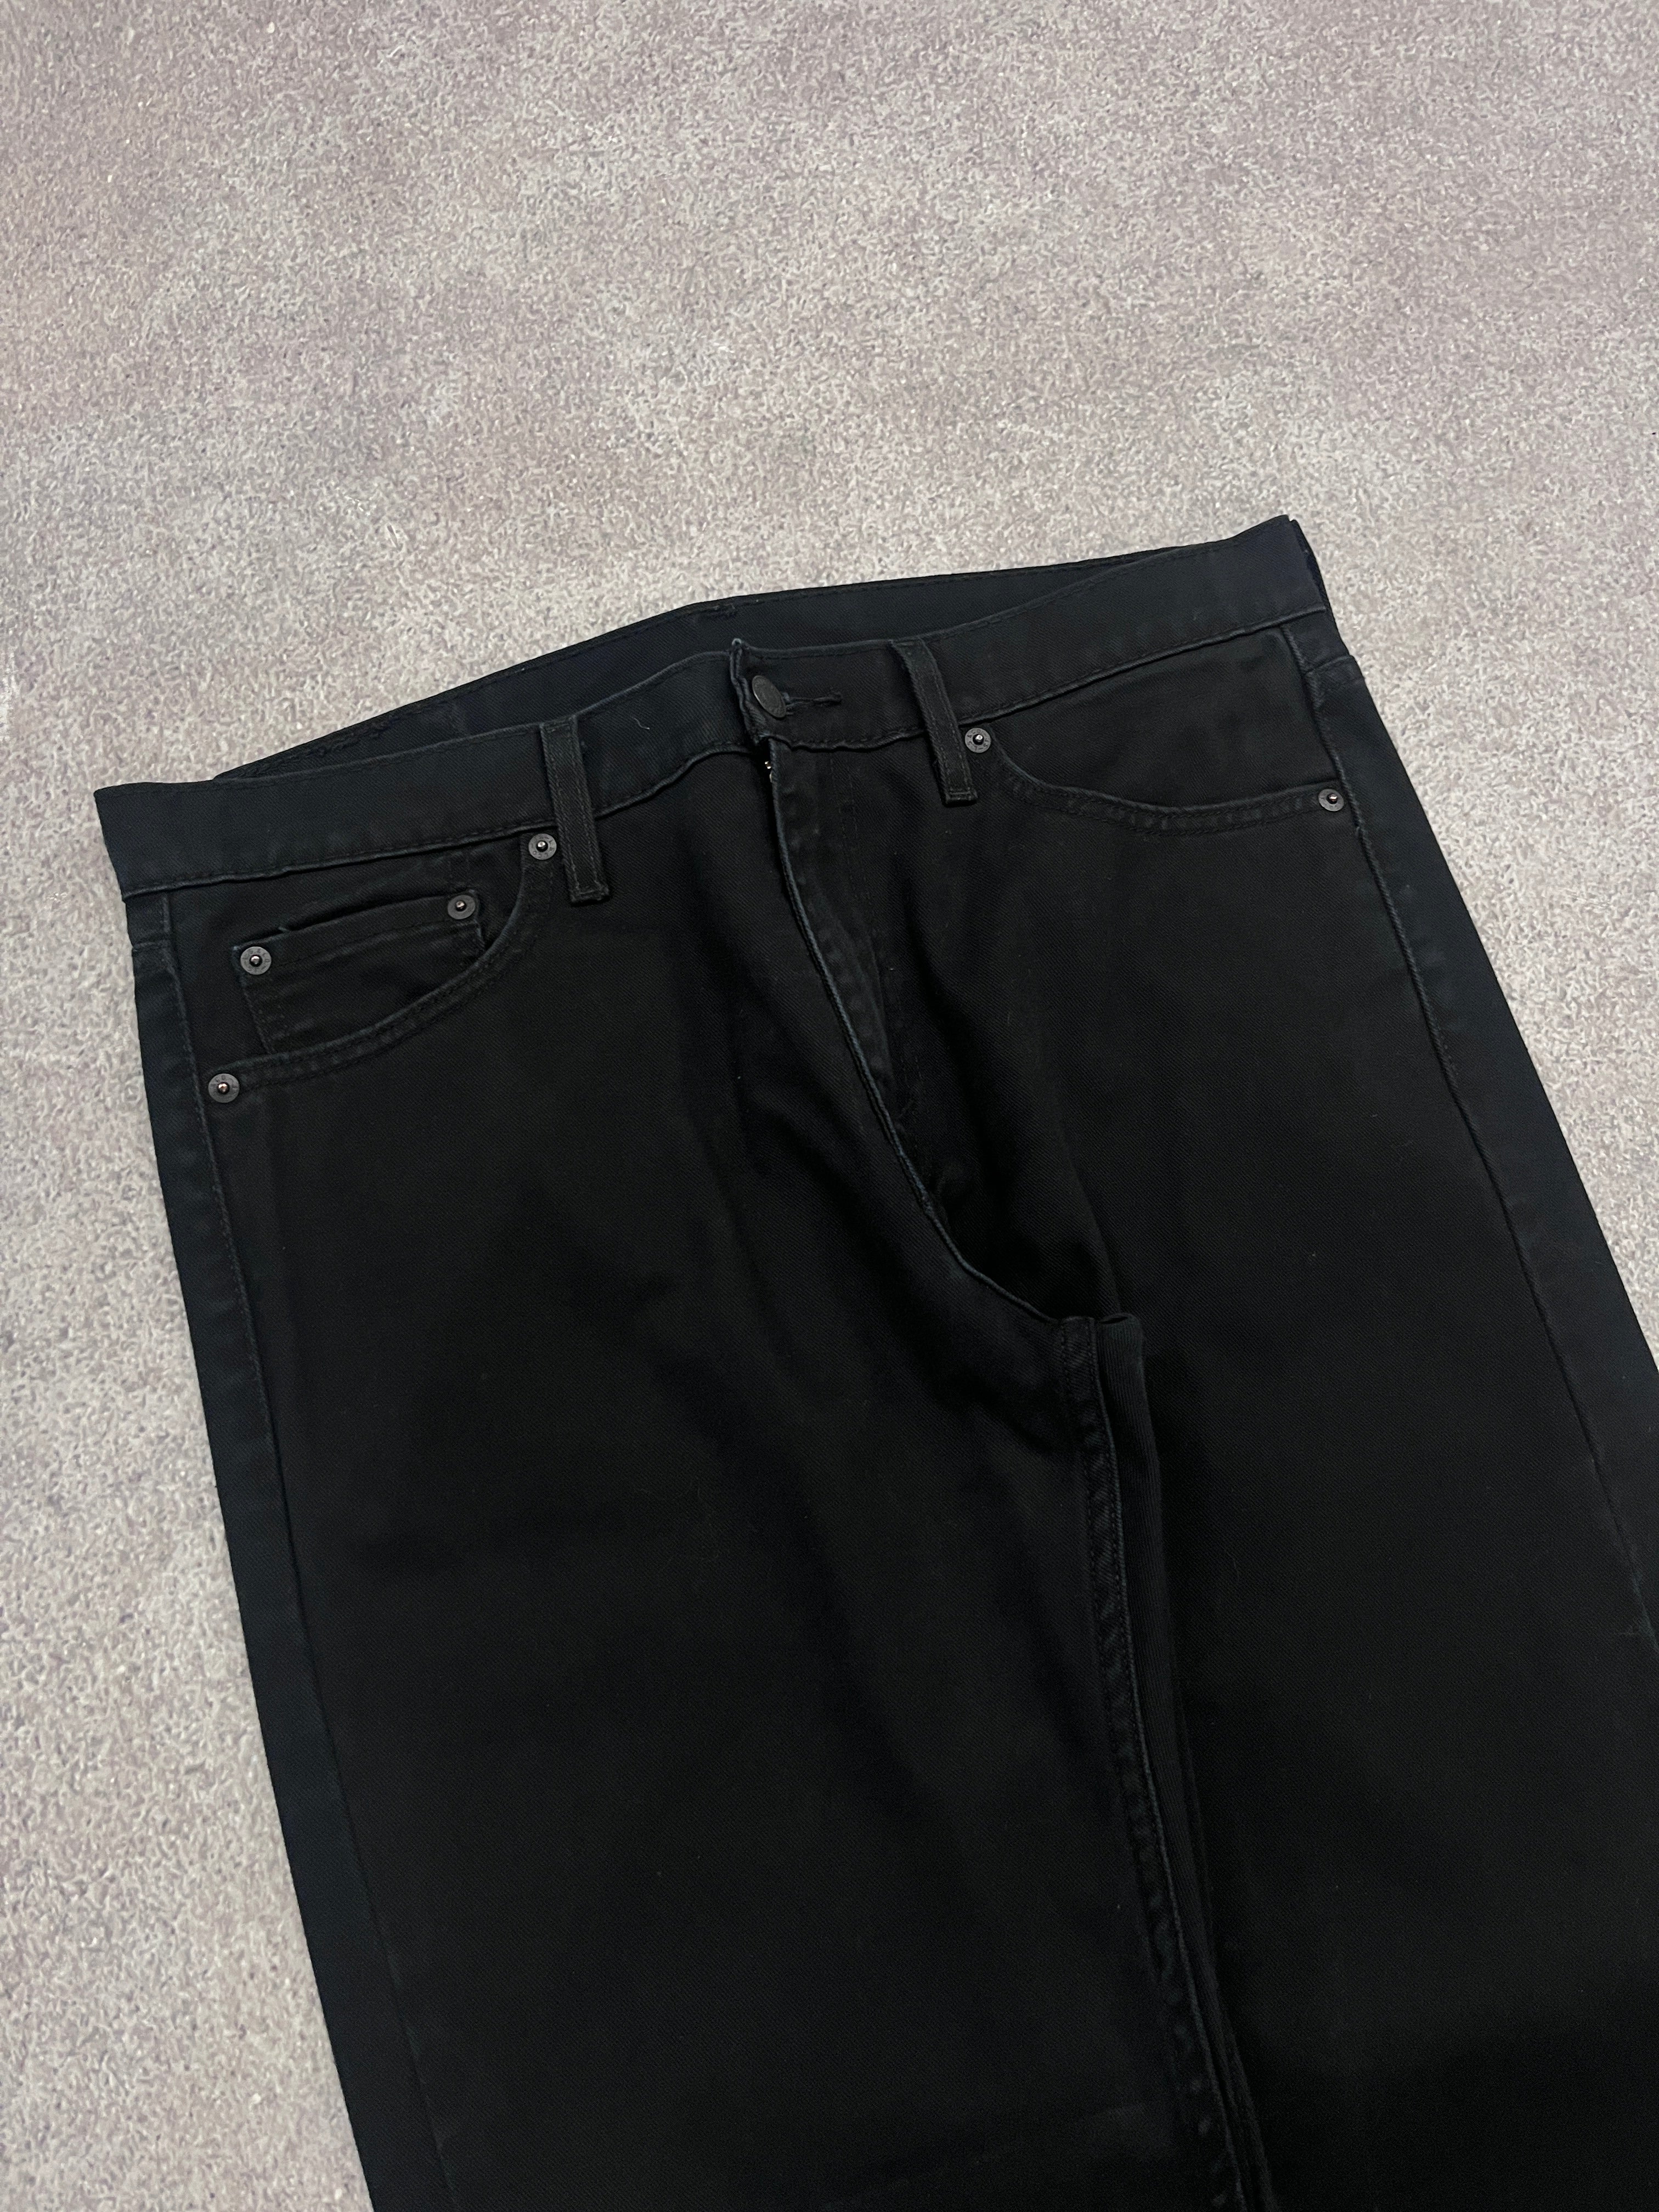 Vintage Levi 513 Denim Jeans Black // W32 L32 - RHAGHOUSE VINTAGE